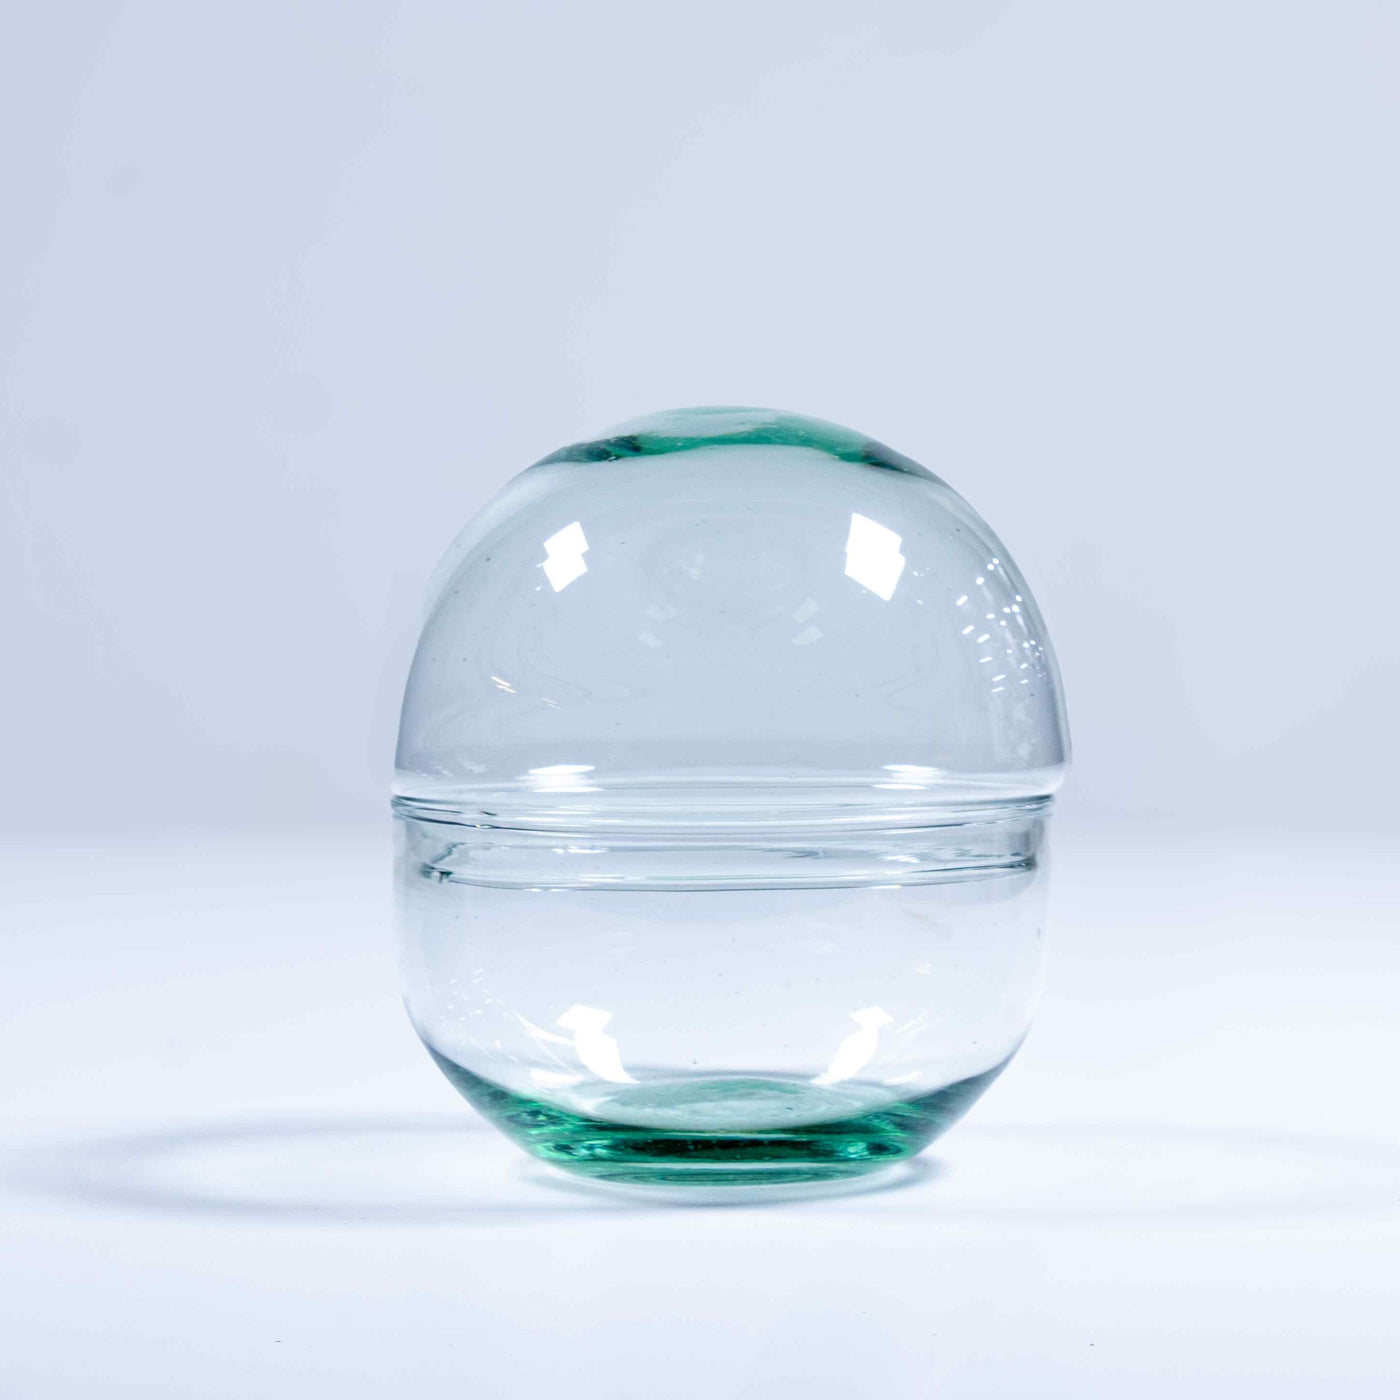 Mini Orb terrarium container